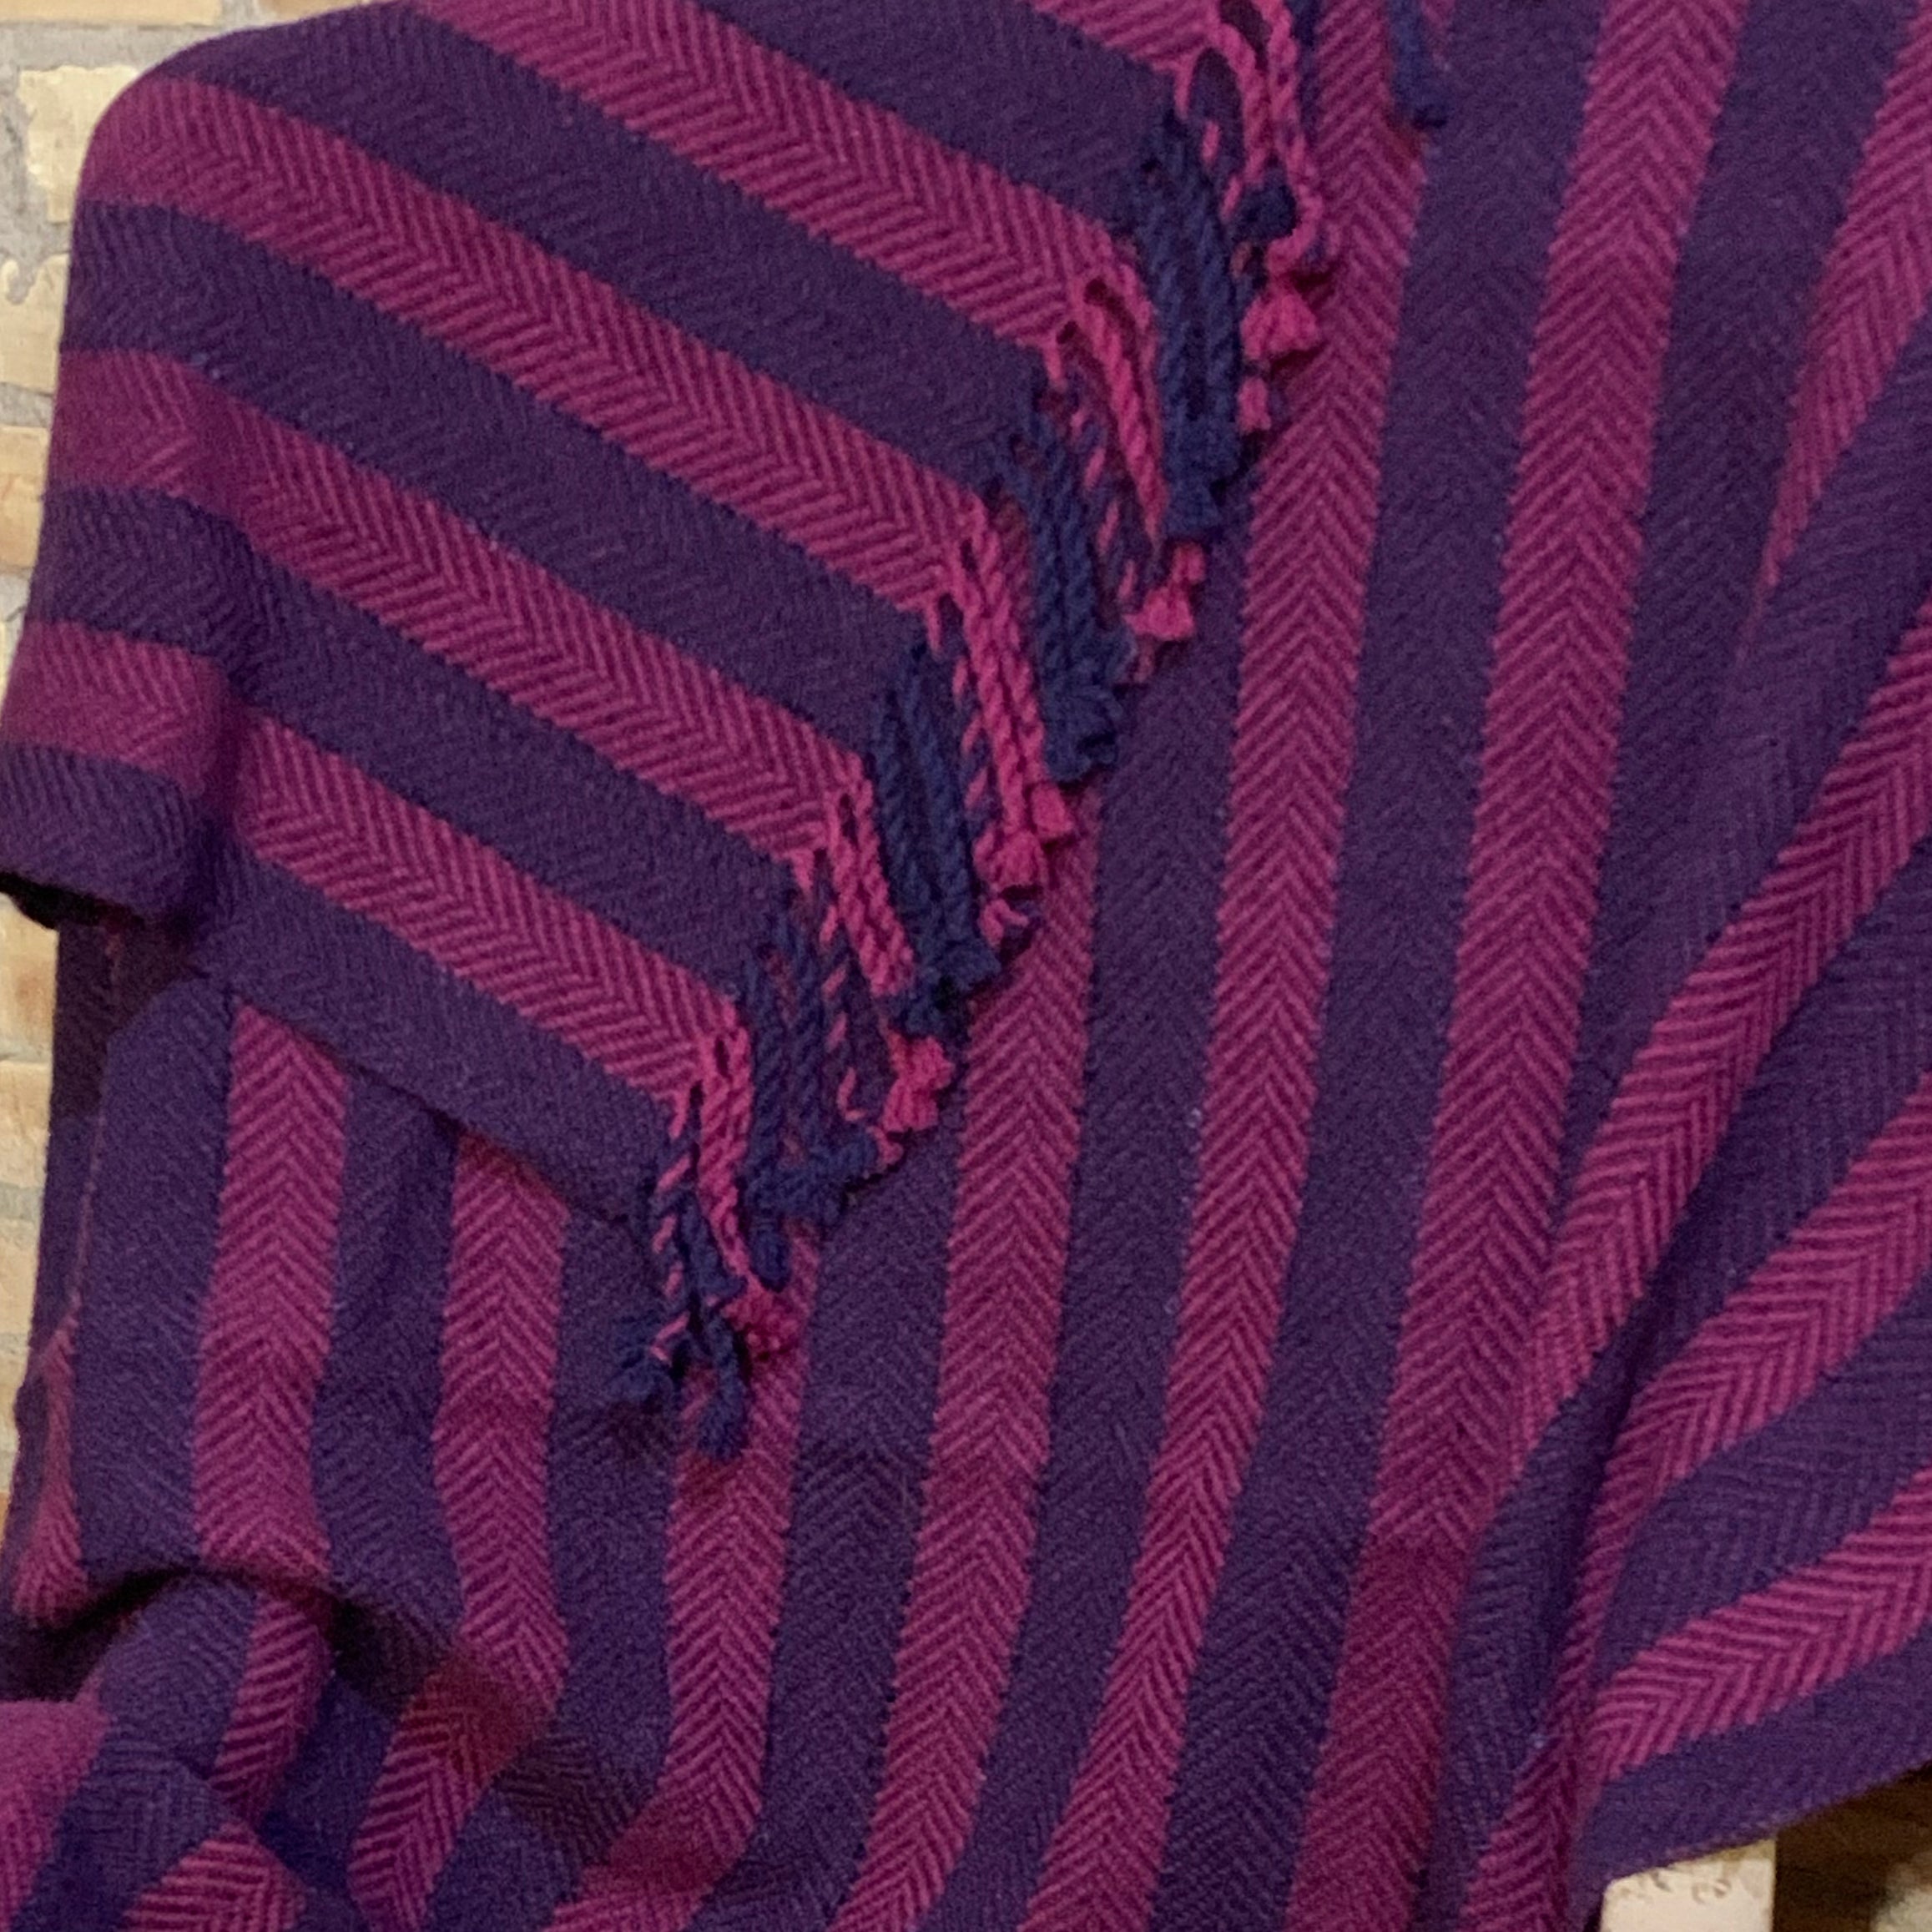 Lap Blanket (Aubergine/Magenta)